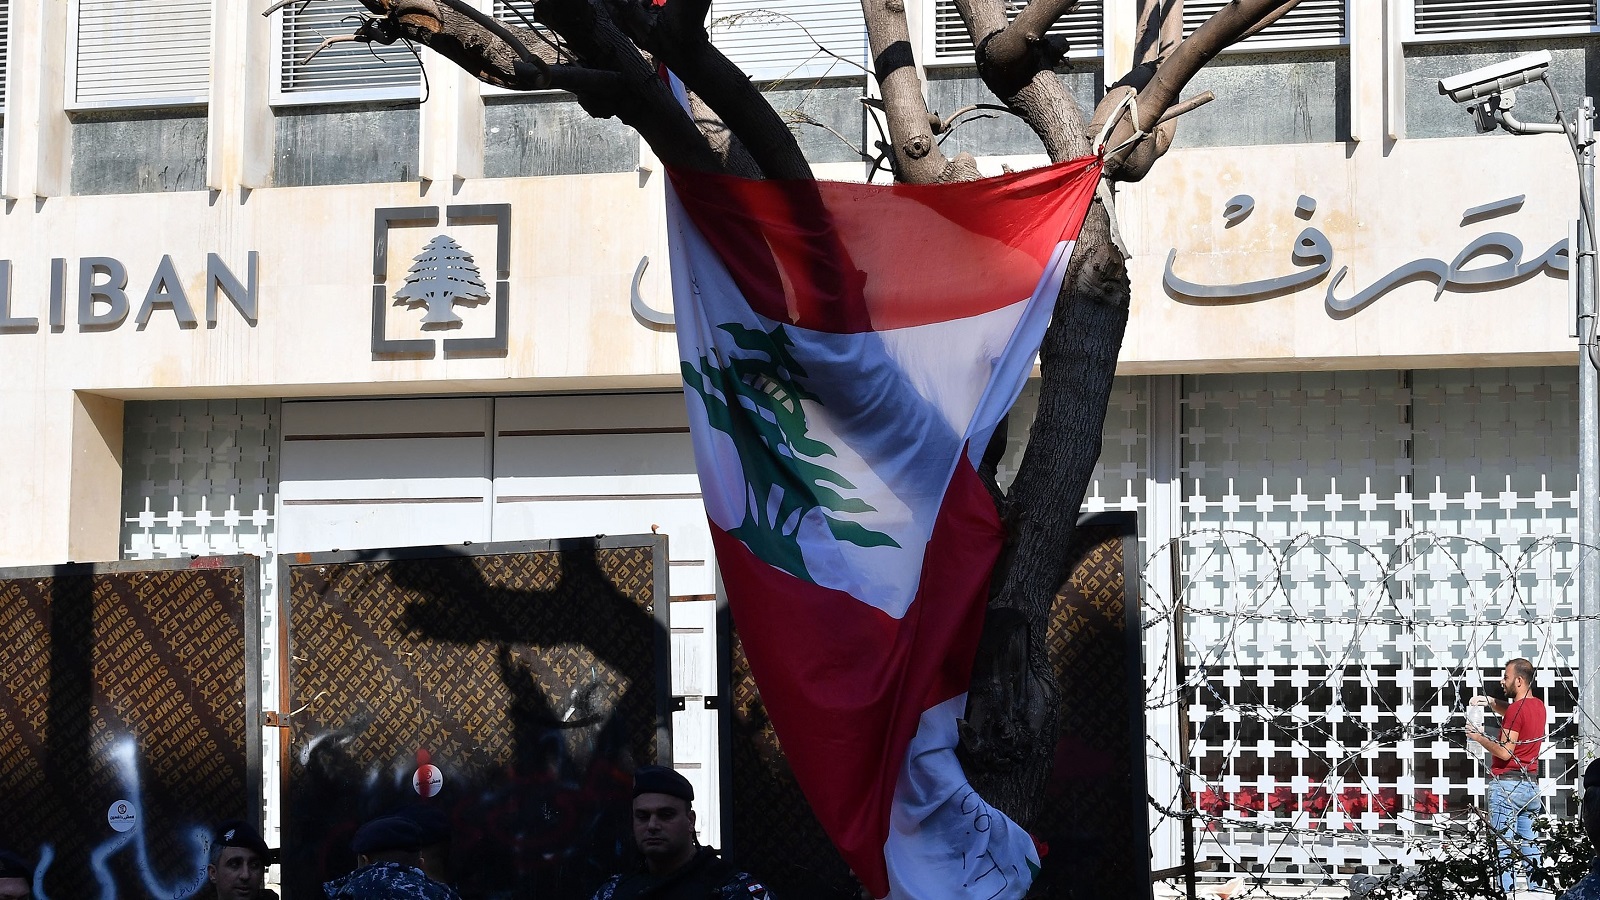 التعاقد مع شركة "لازارد": اللوبي الصهيوني سيتحكّم باقتصاد لبنان؟